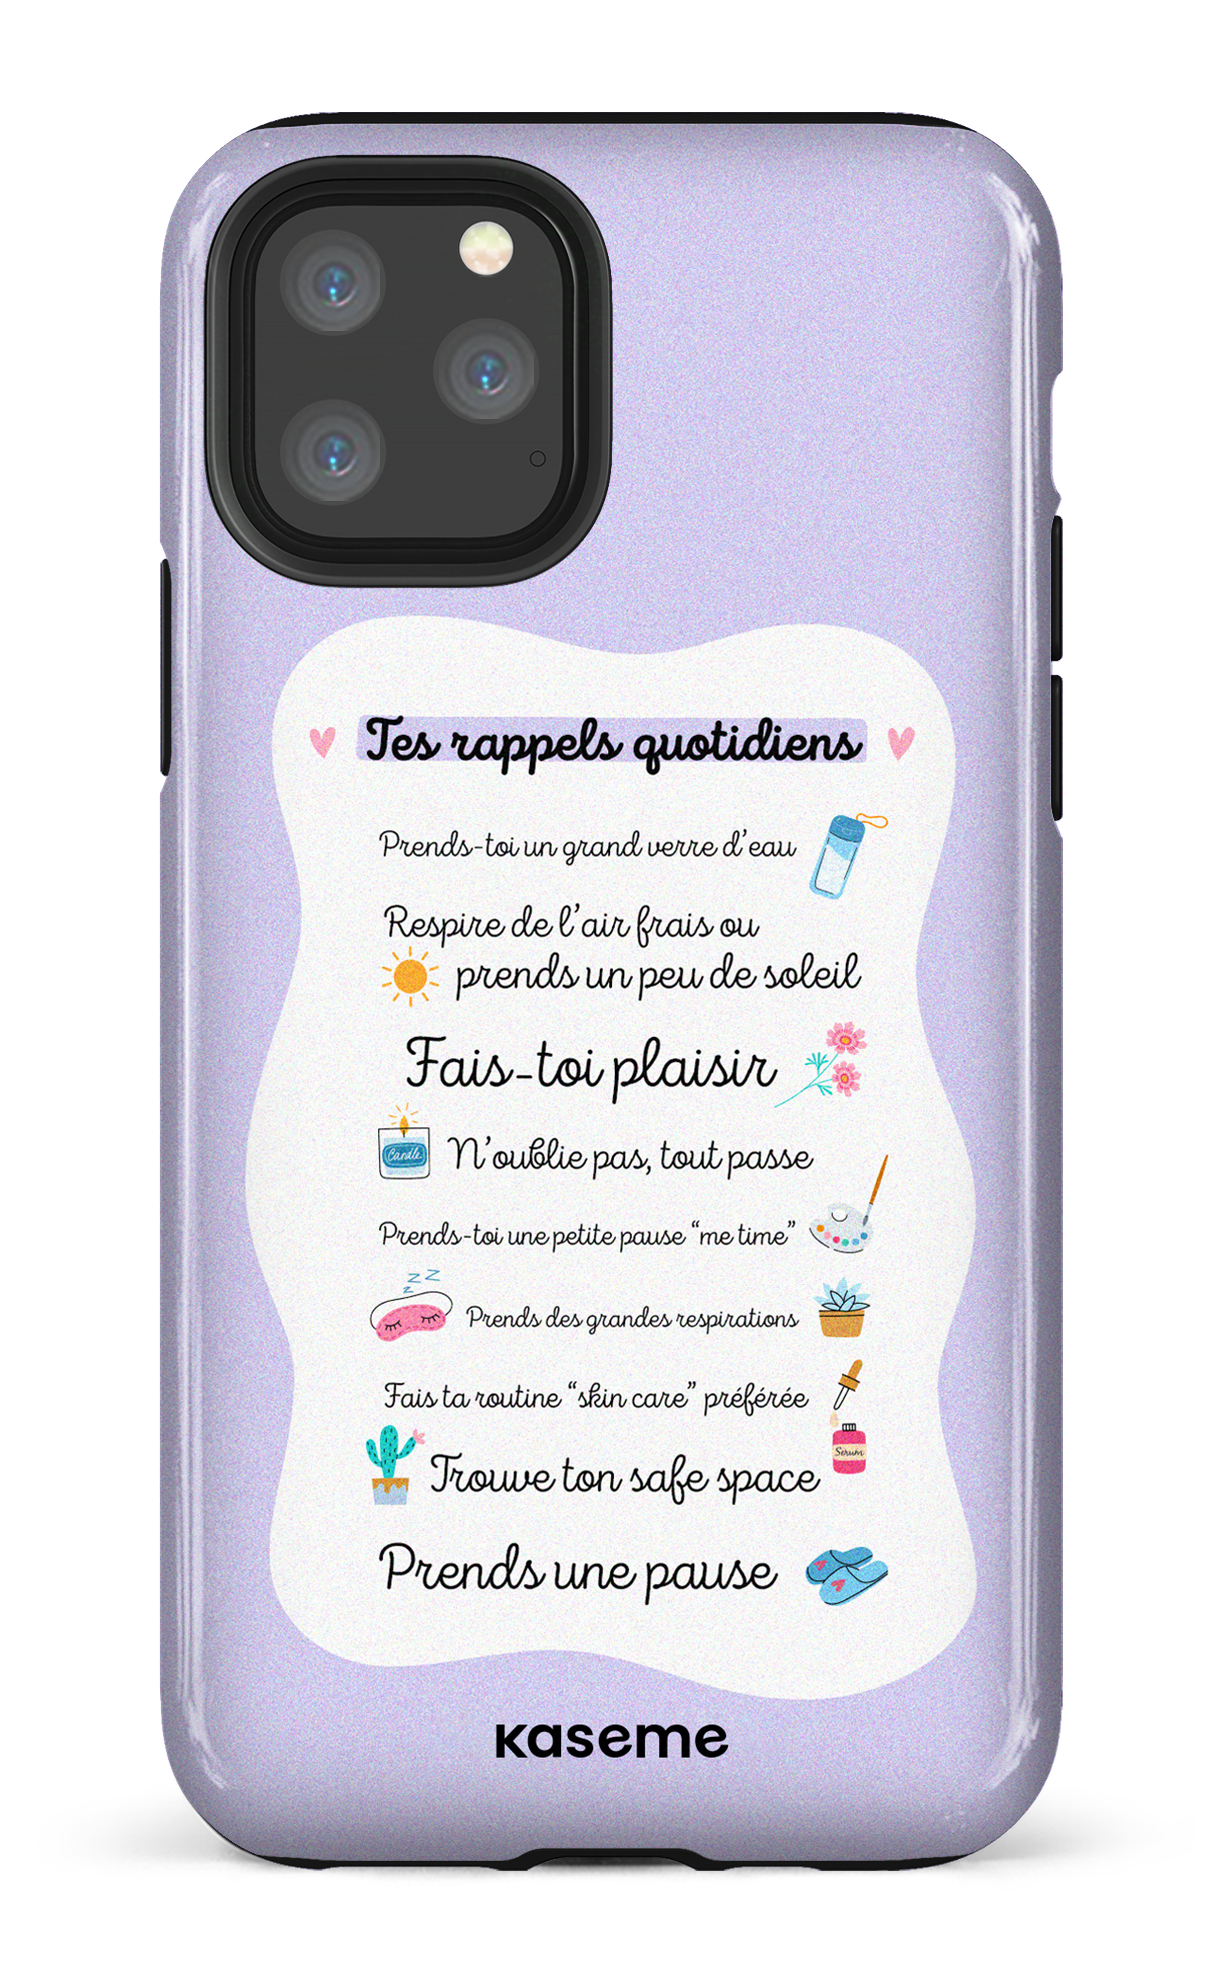 Tes rappels quotidiens purple - iPhone 11 Pro